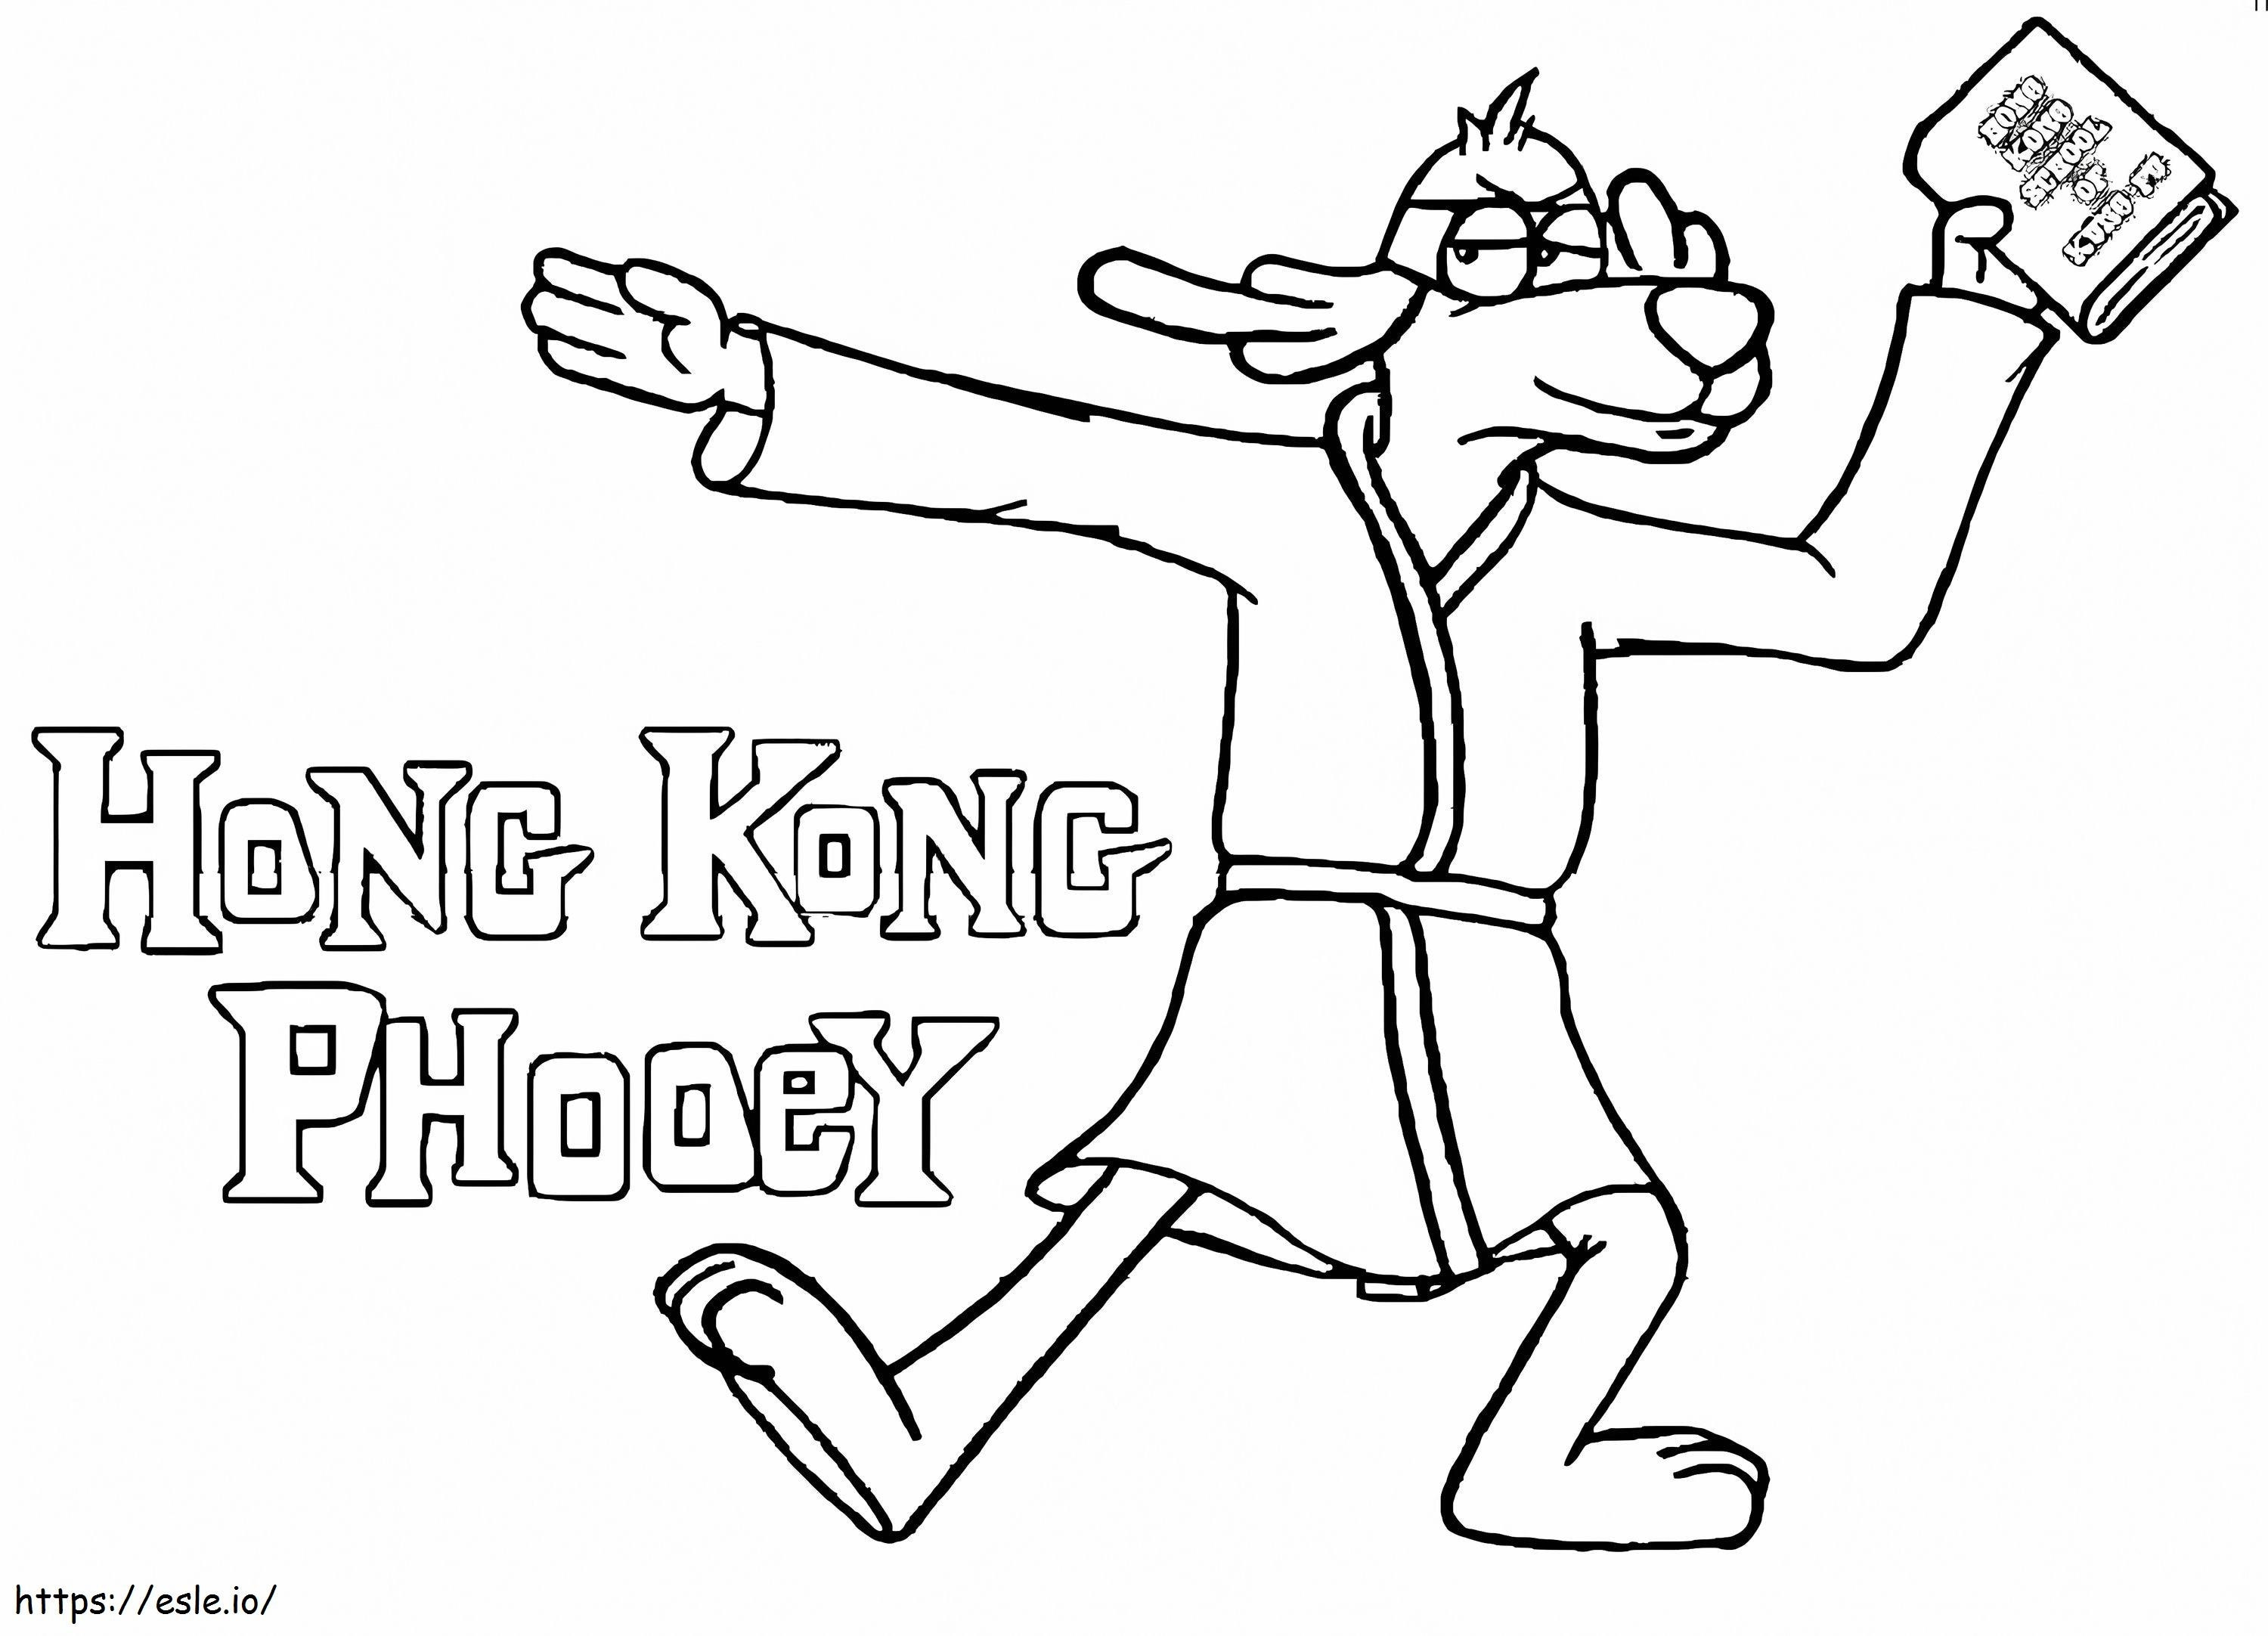 Hong Kong Phooey cu o carte de colorat